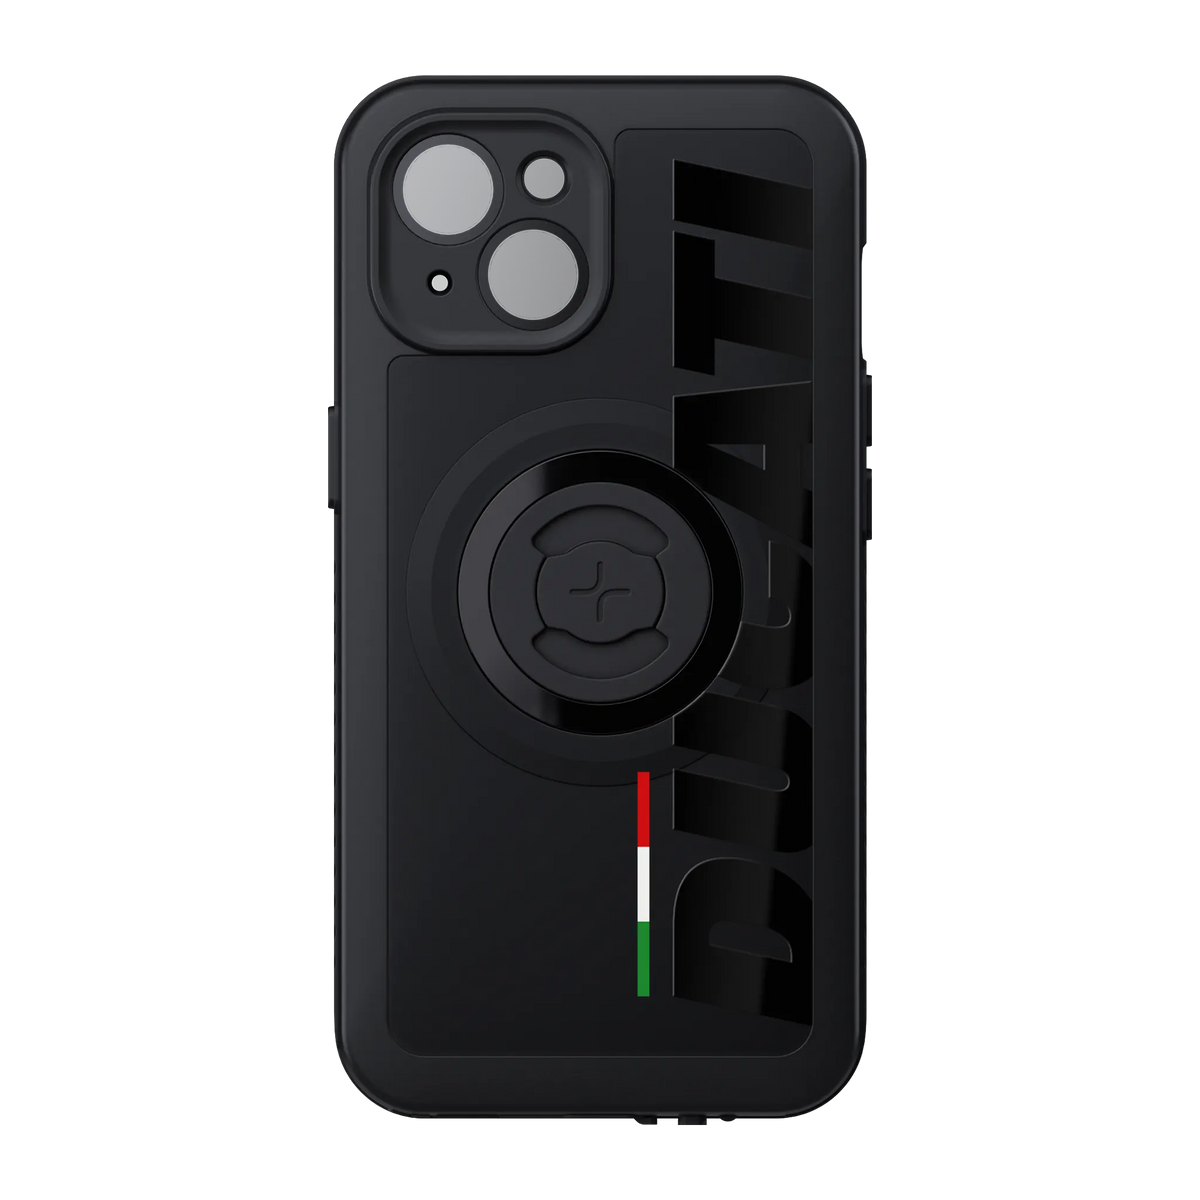 Ducati Phone Case - Flag